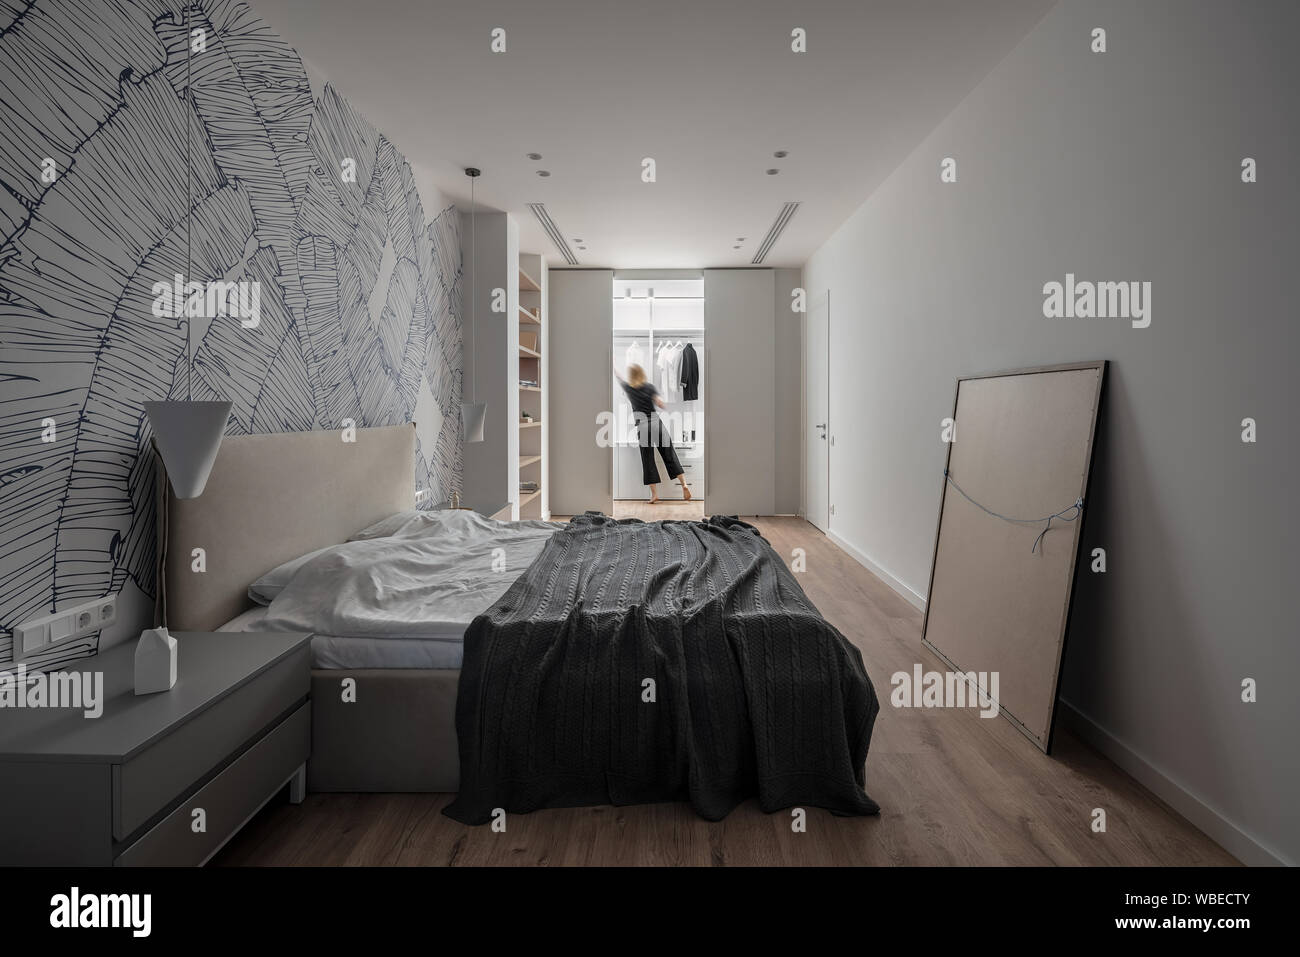 Modernes Schlafzimmer mit weißen Wänden mit Mustern und Parkett auf dem Fußboden. Es gibt ein Doppelbett, Nachttische, Holzregale, Tür, Hängeleuchte, Stockfoto